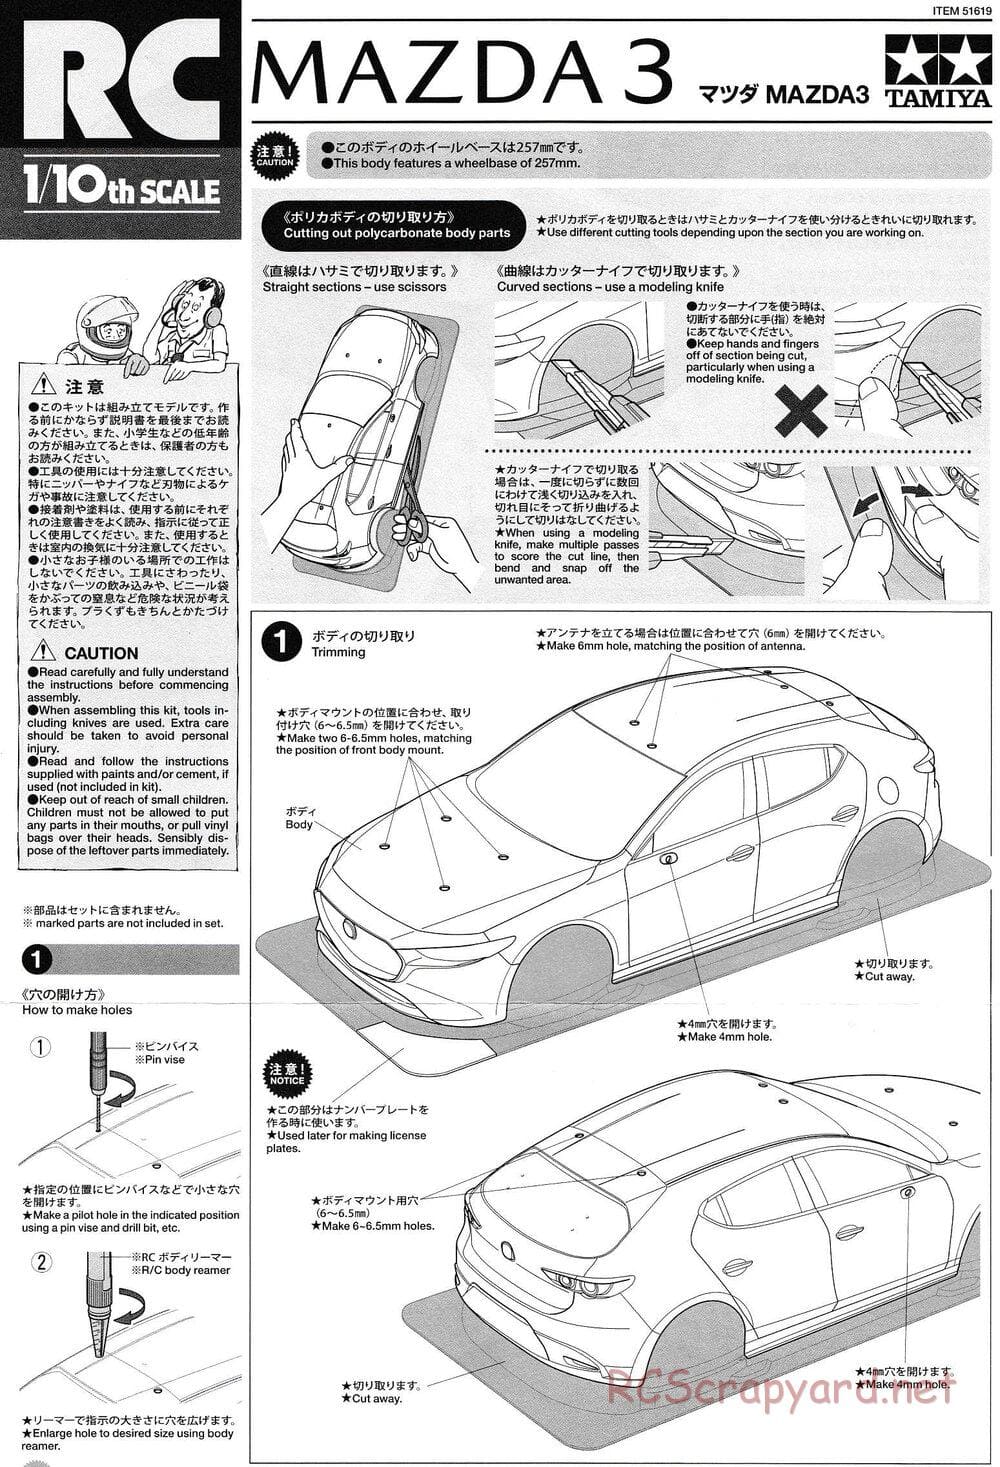 Tamiya - Mazda3 - TT-02 Chassis - Body Manual - Page 1